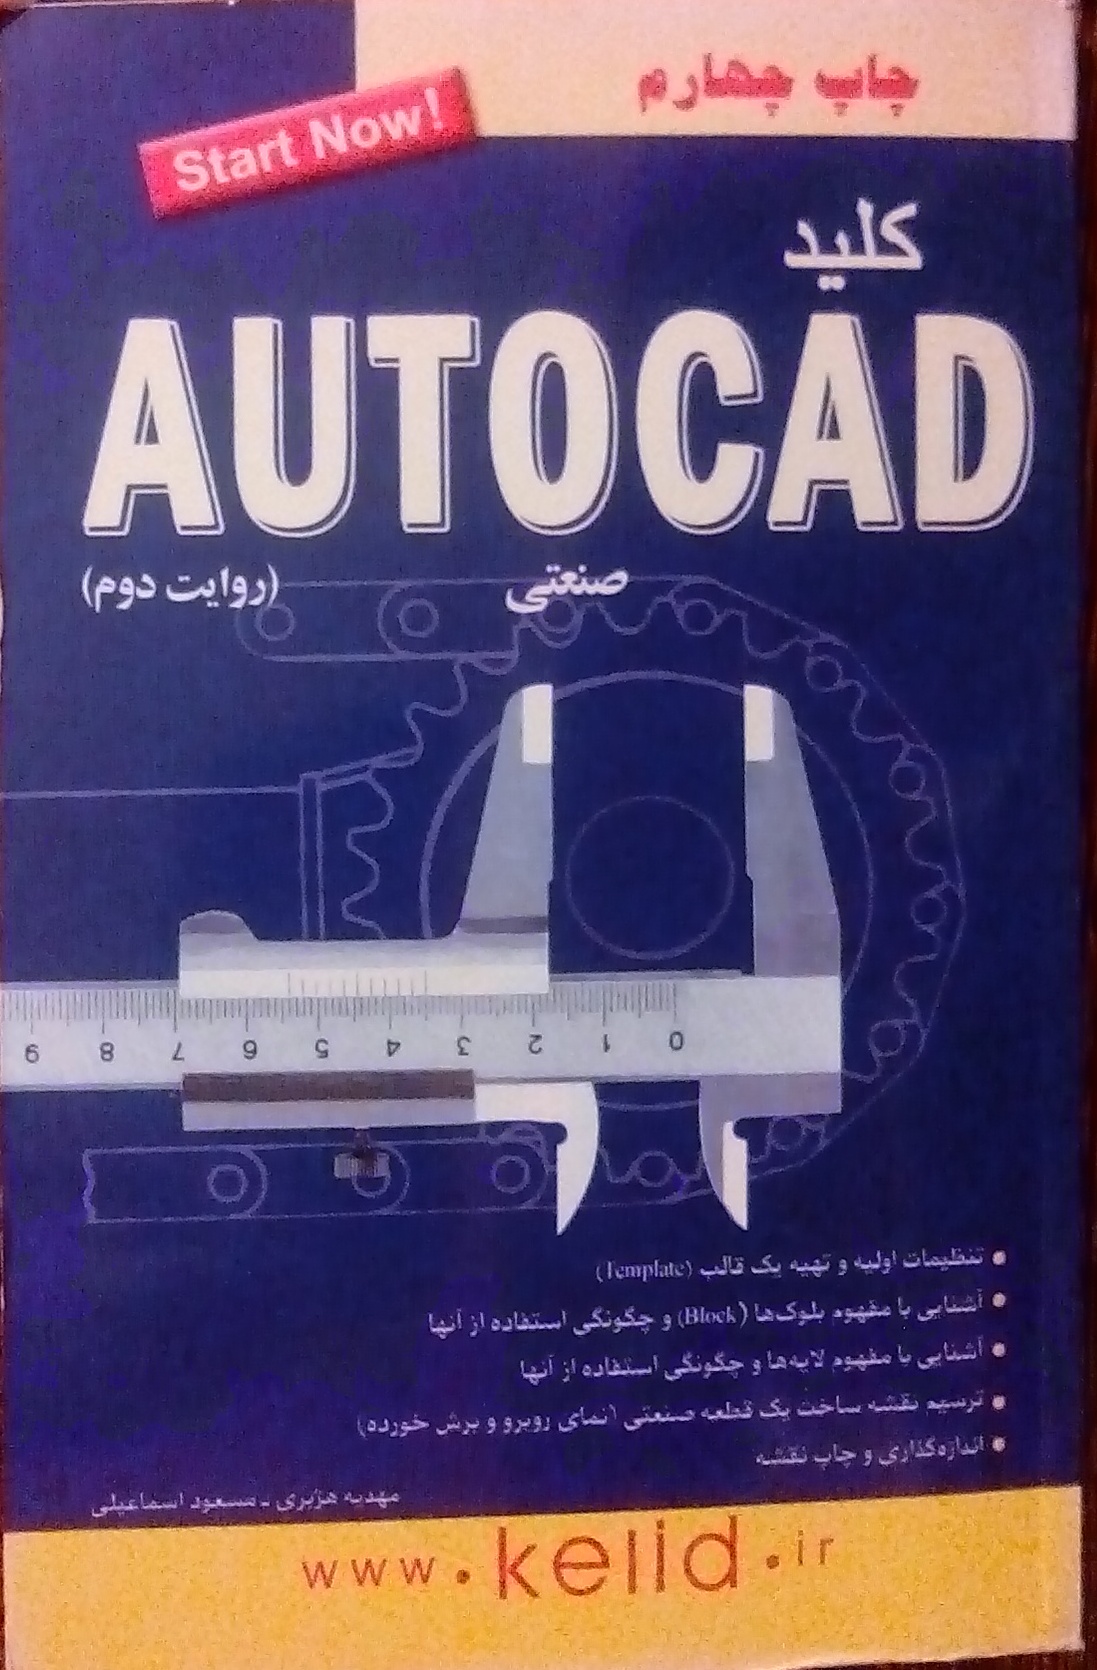  کتاب کلید AUTOCAD صنعتی